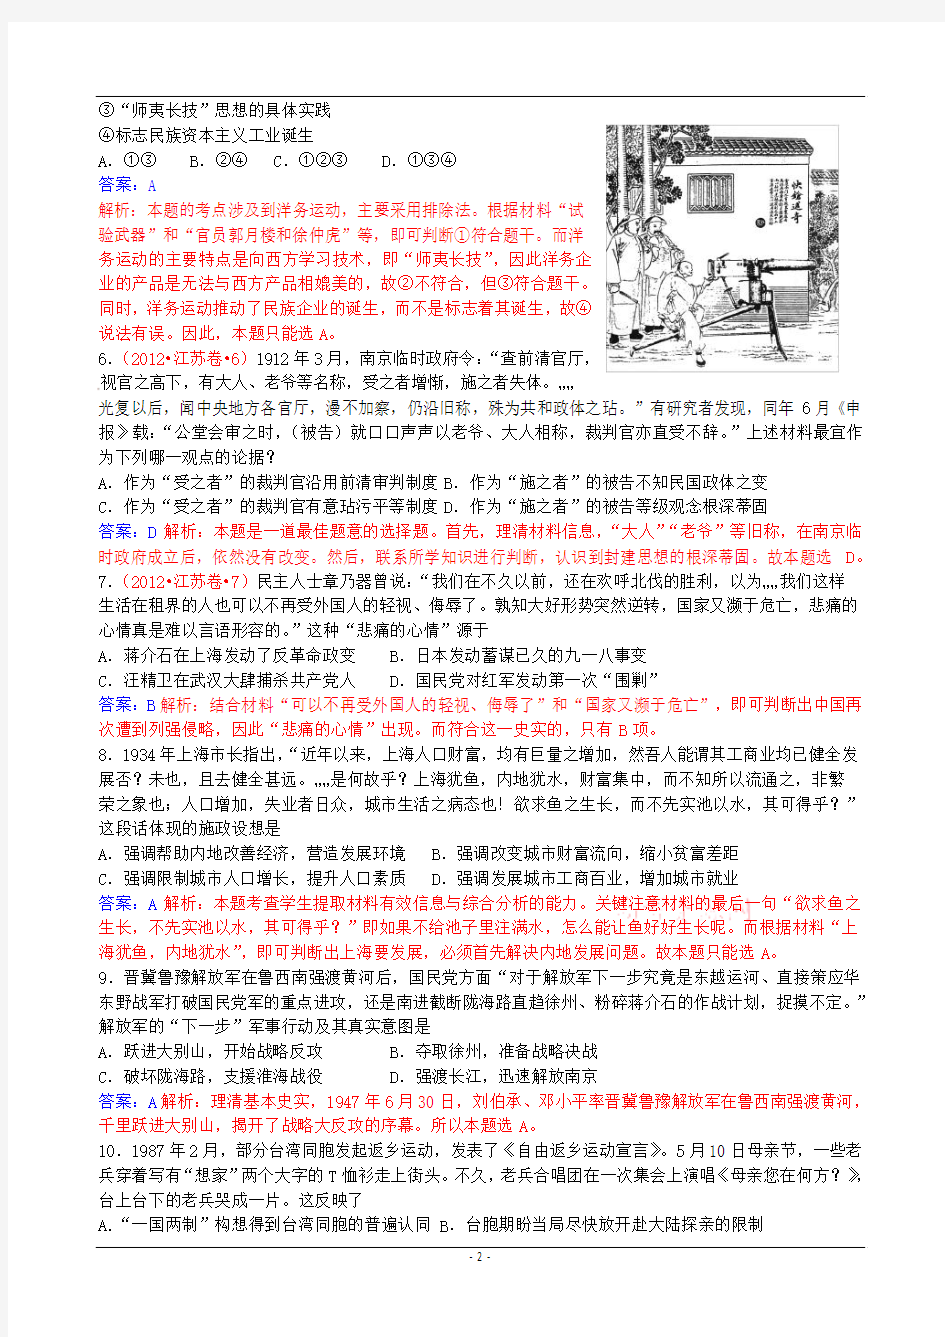 2012年高考真题——历史(江苏卷)解析版